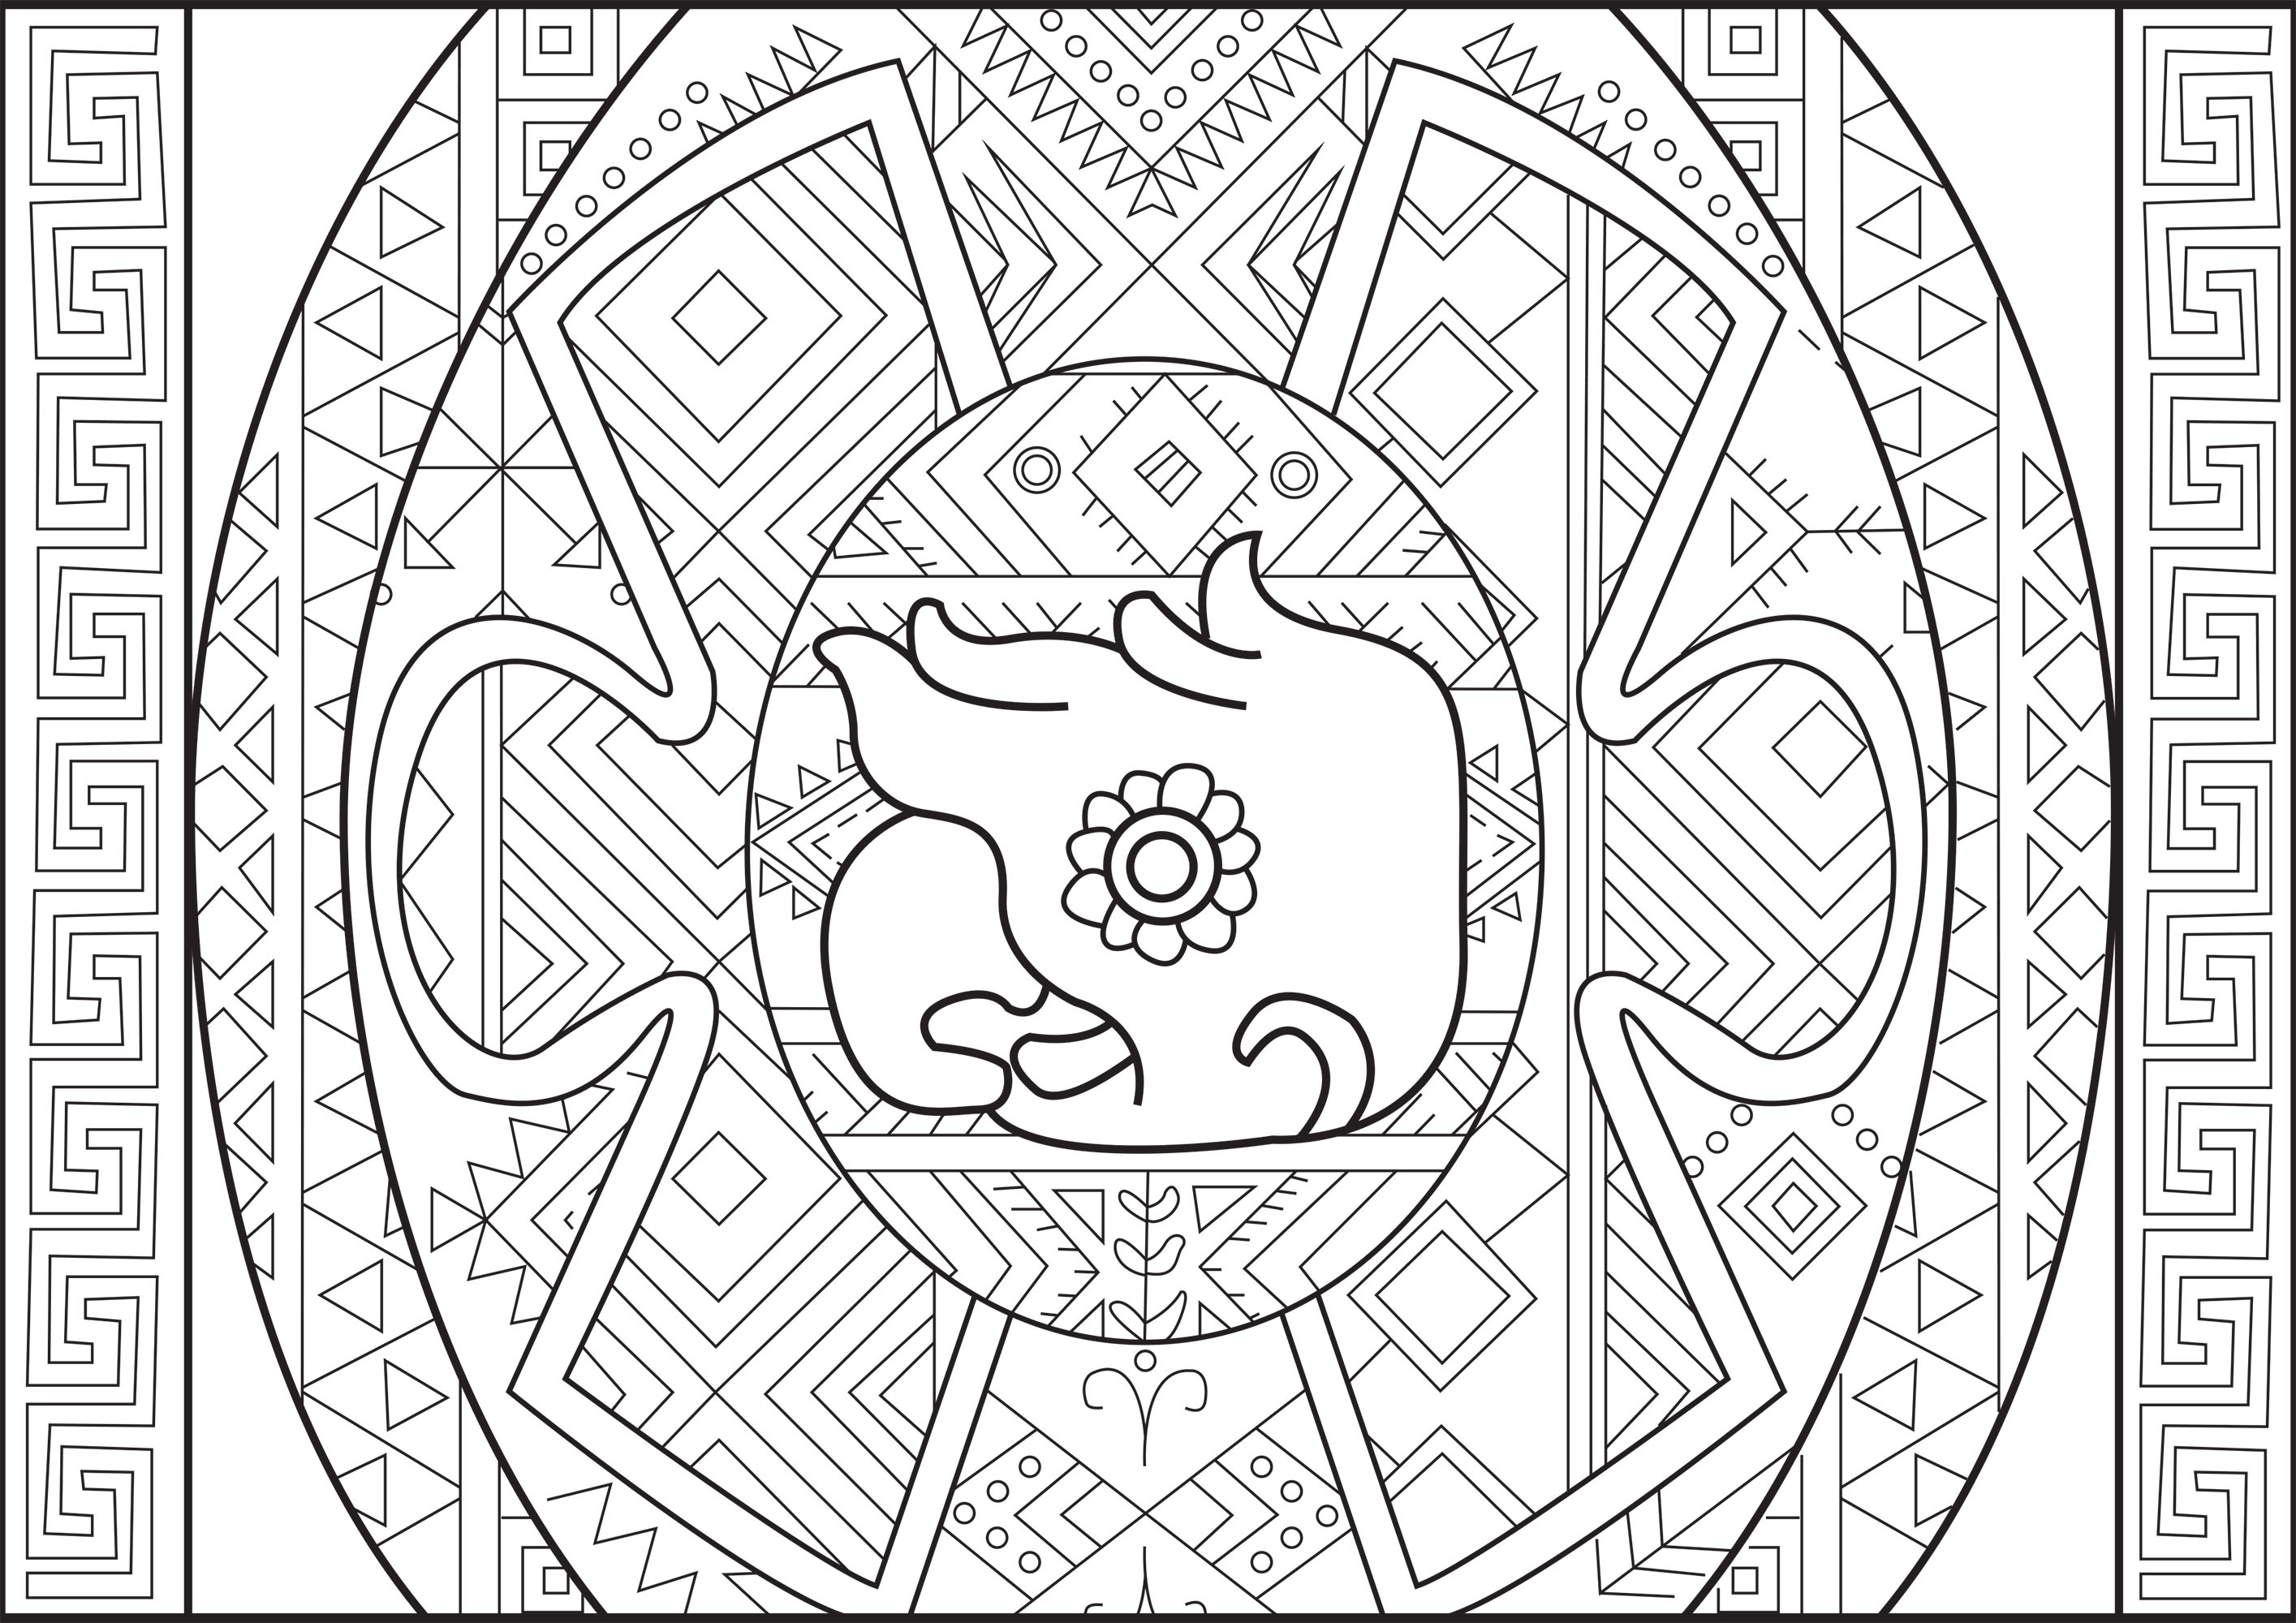 Cabeza de loro maya con bellos motivos alrededor (estilo azteca / maya)